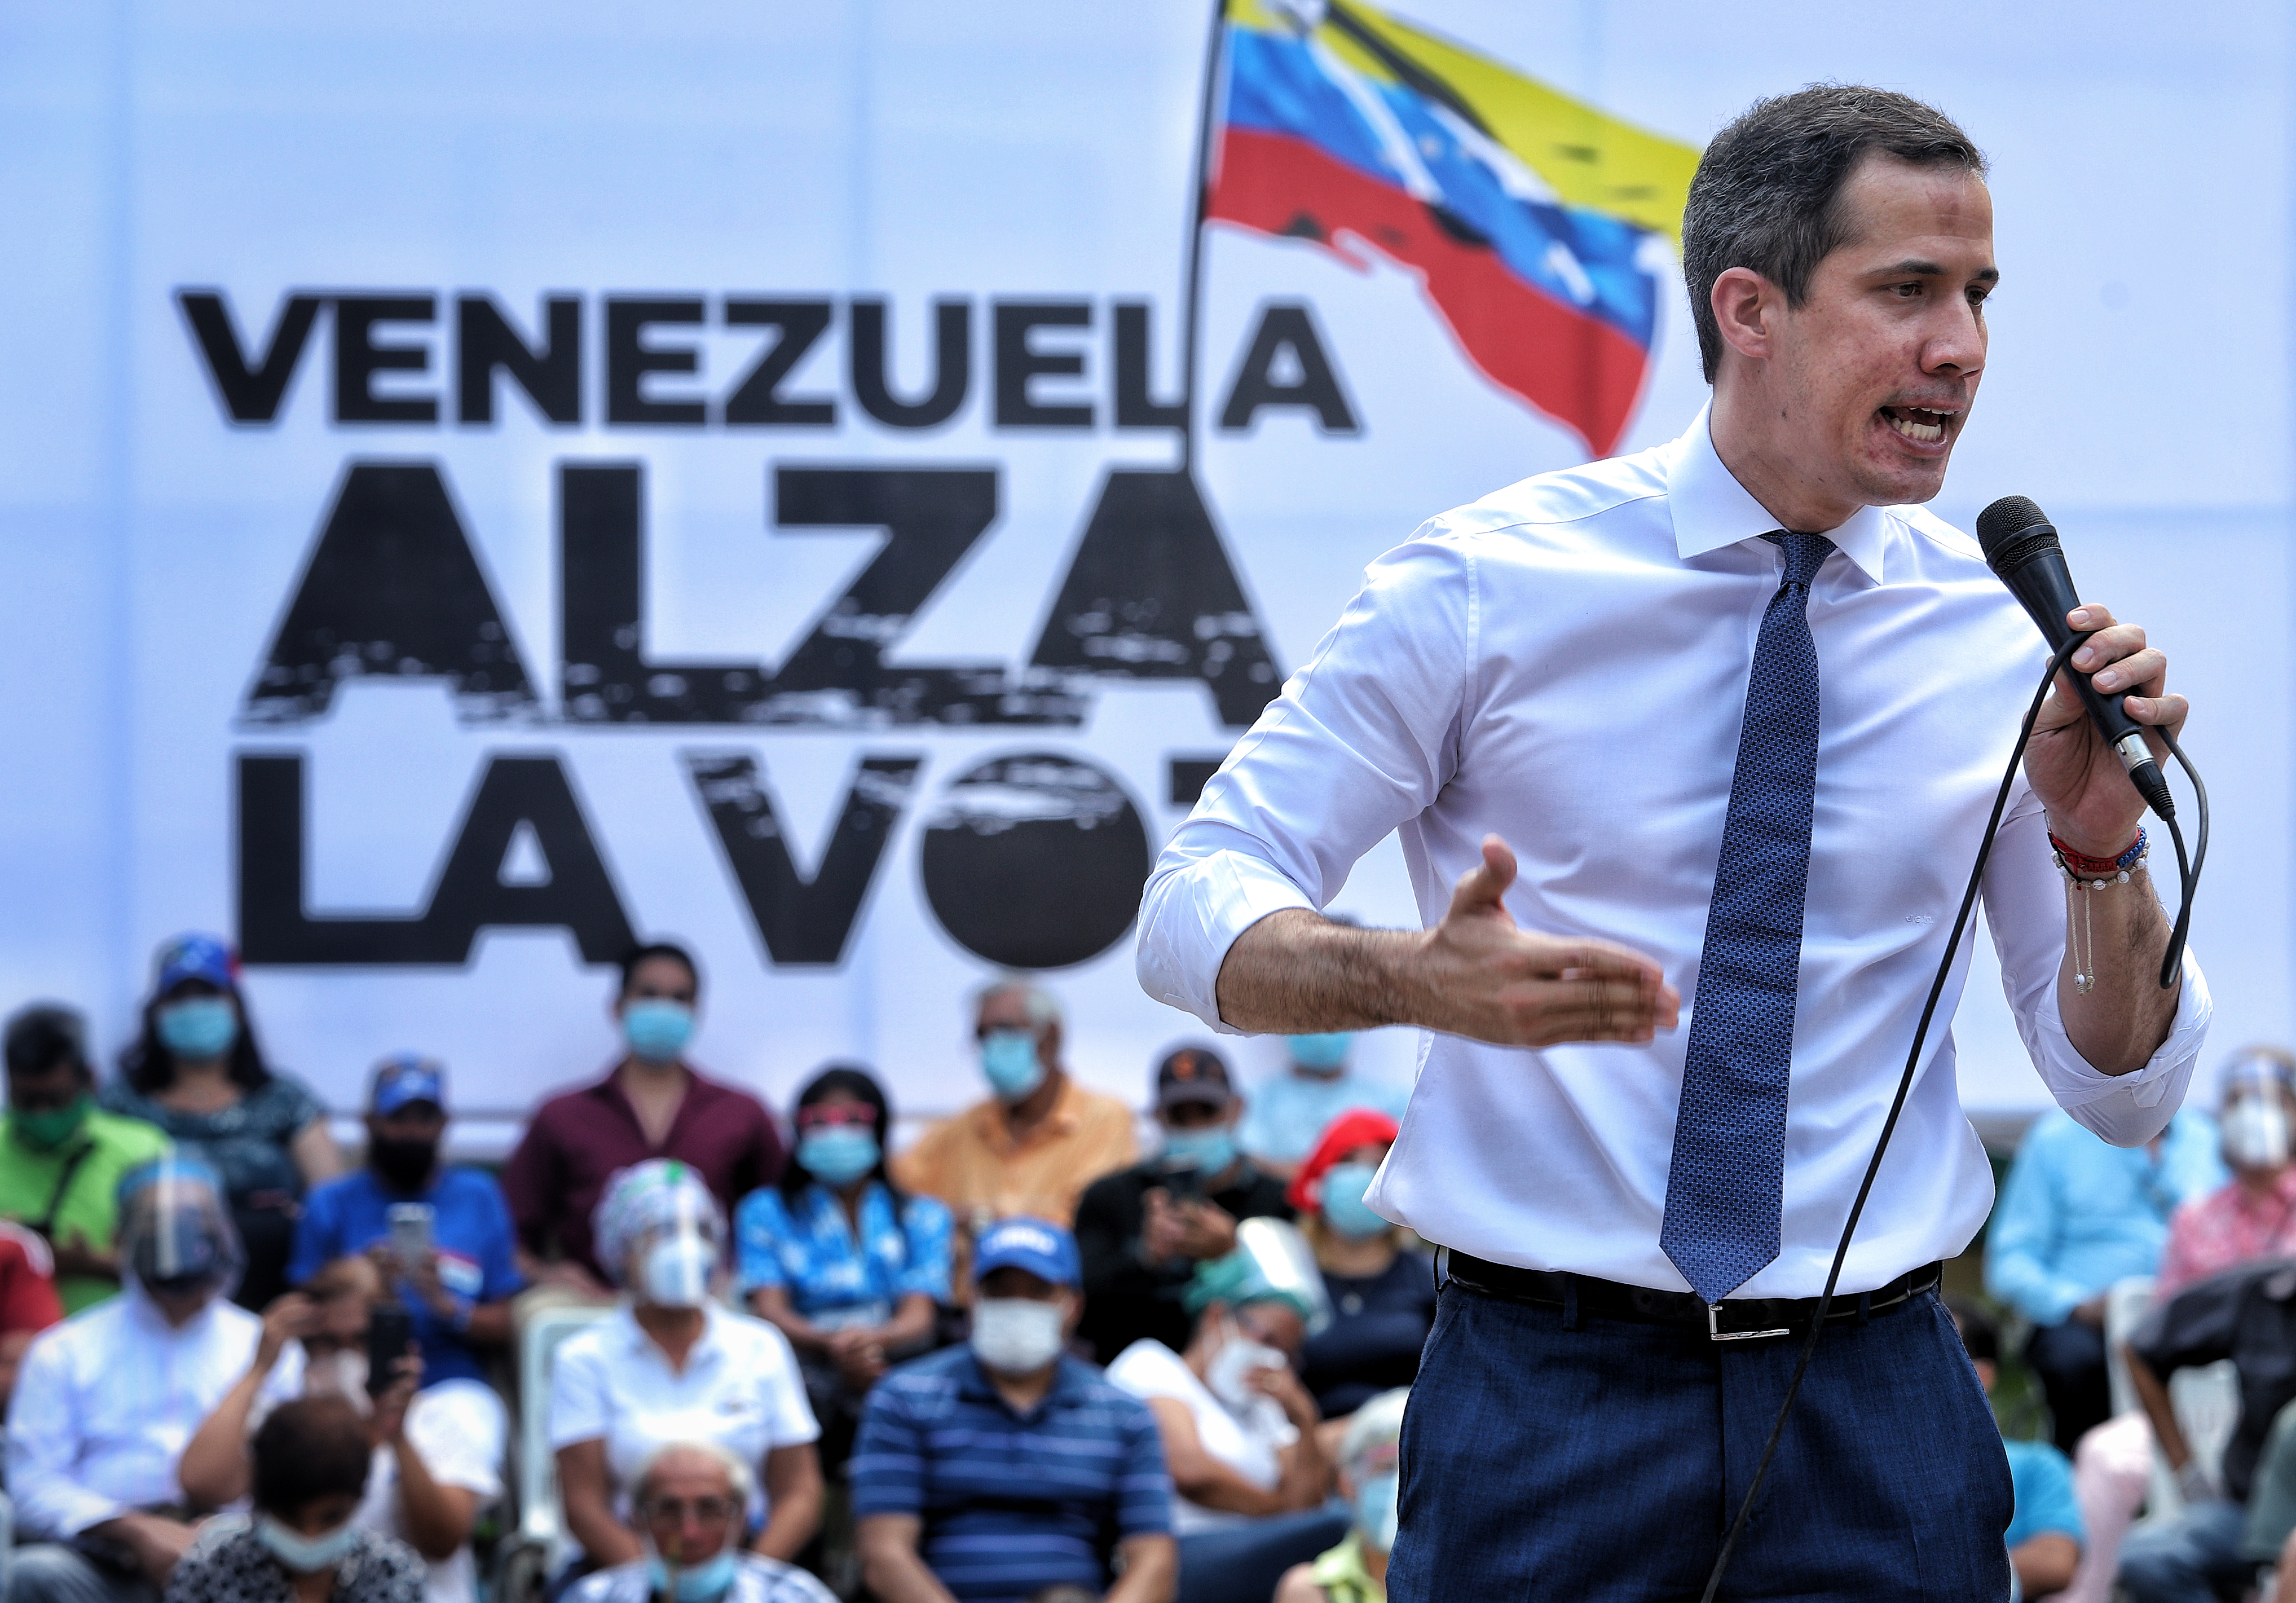 “Venezuela alza la voz”, el eslogan que Maduro pretende arrebatarle a Guaidó